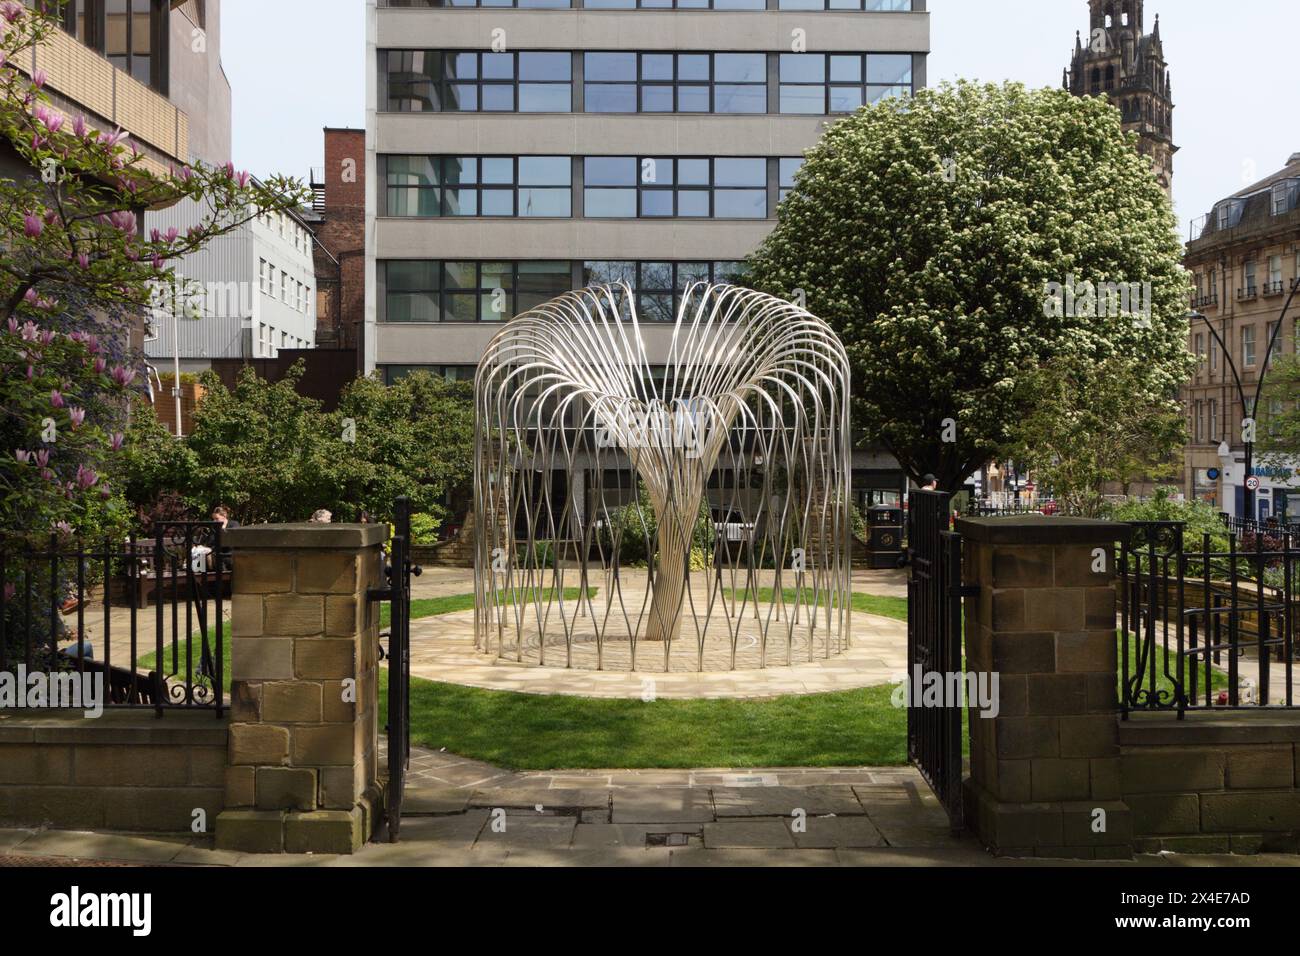 Sculpture en métal du mémorial de la pandémie de COVID dans Barkers Pool Garden, Sheffield centre-ville Angleterre Royaume-Uni art public Wilow Tree Memorial Banque D'Images